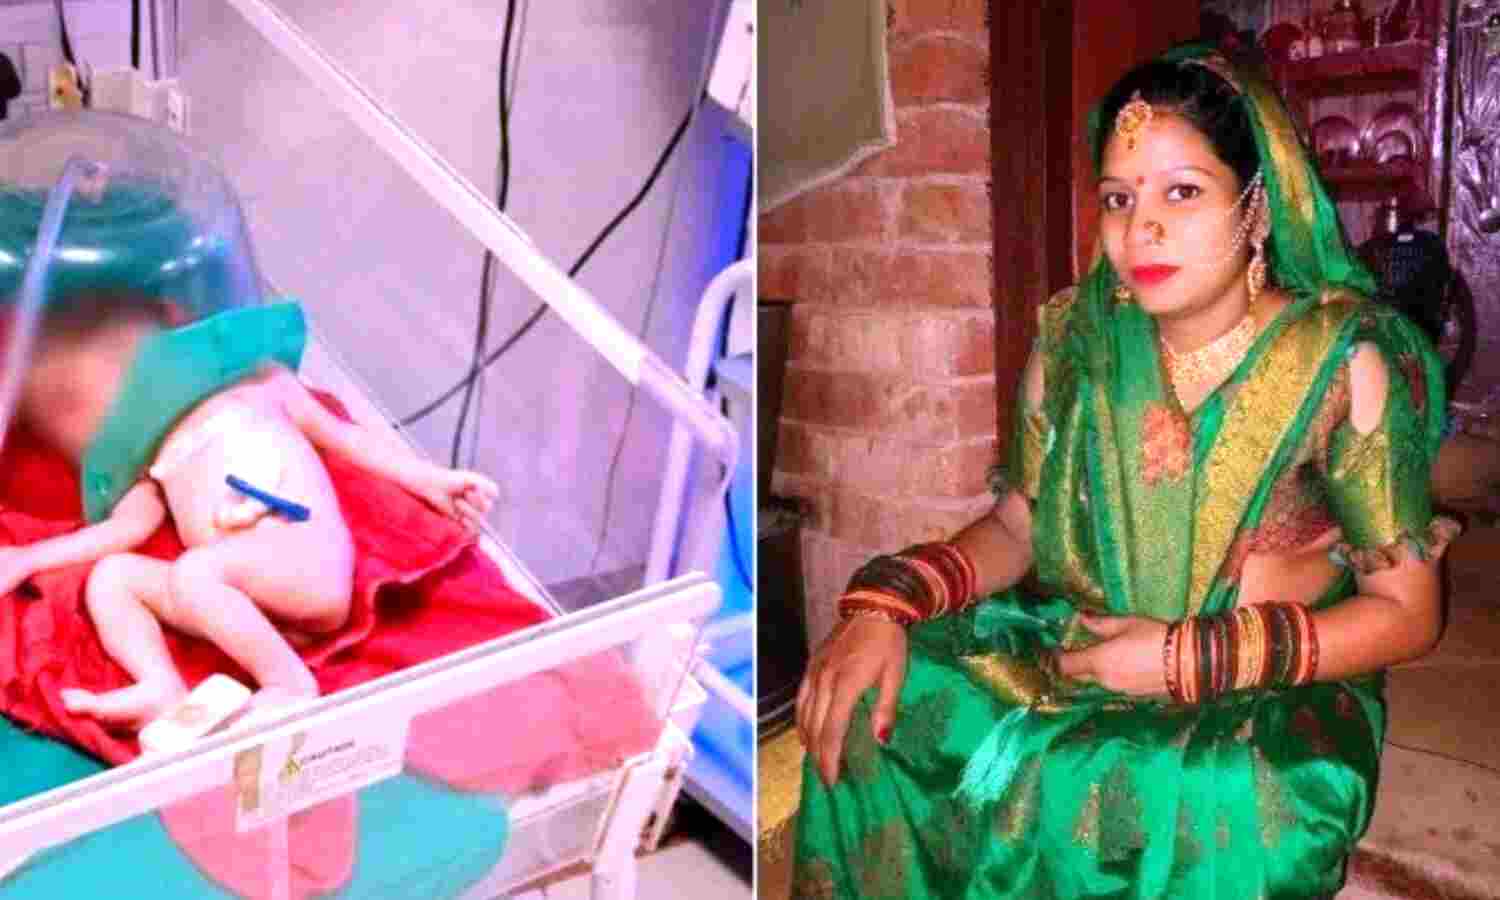 Uttar Pradesh News : गर्भवती महिला को ट्रक ने कुचला, पेट फटने से बाहर आ गिरी बच्ची